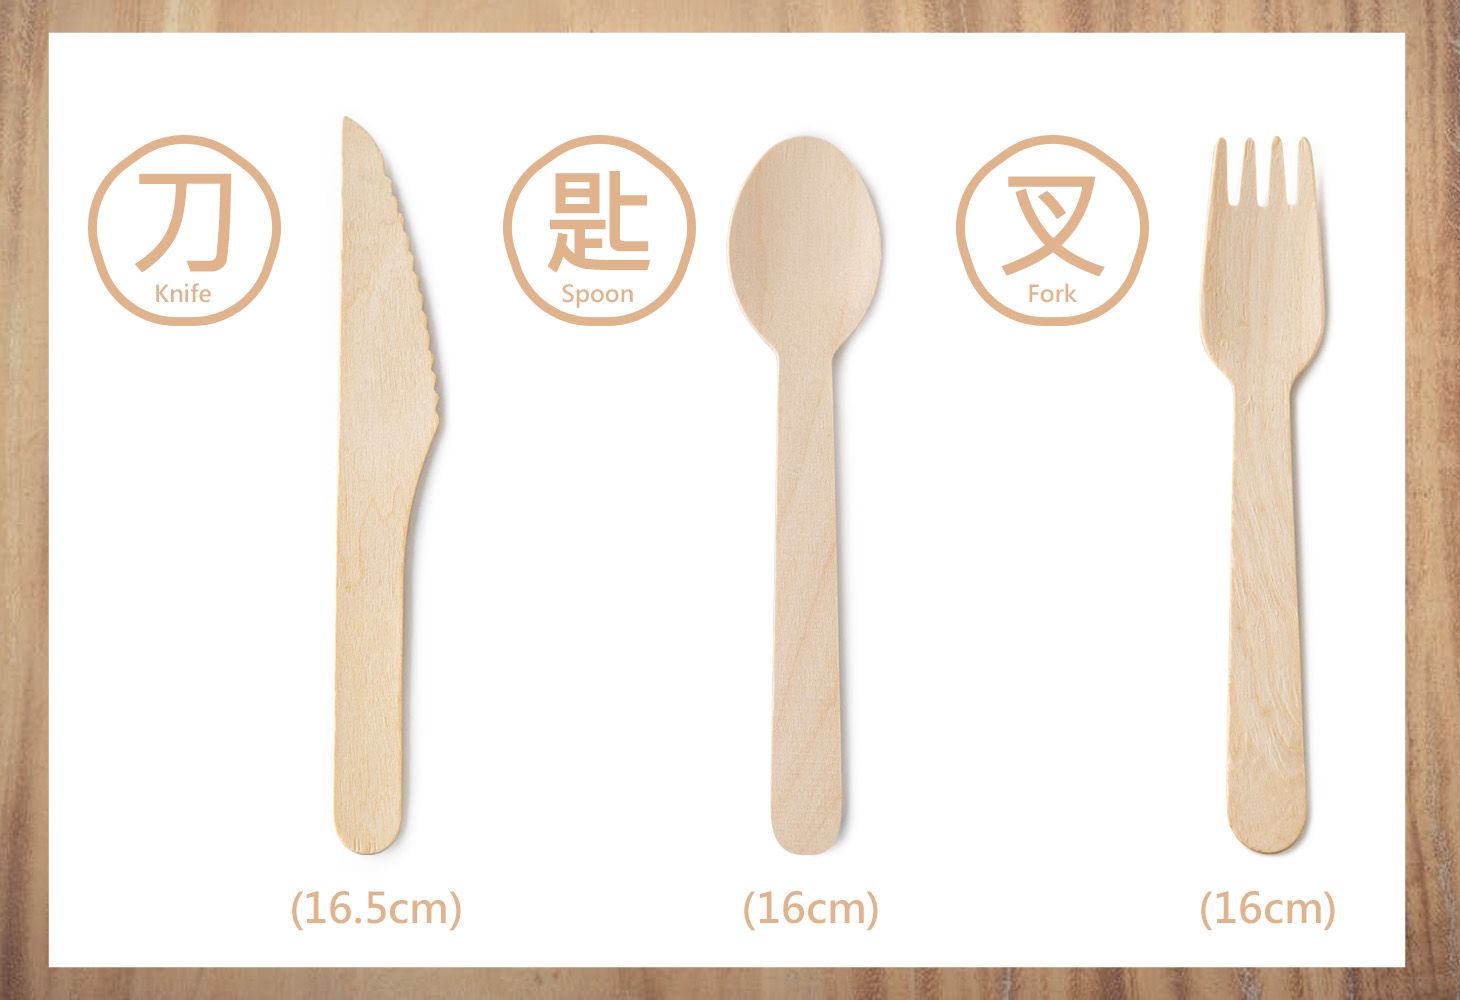 大尺寸的木製餐具有刀、叉、匙可以選擇